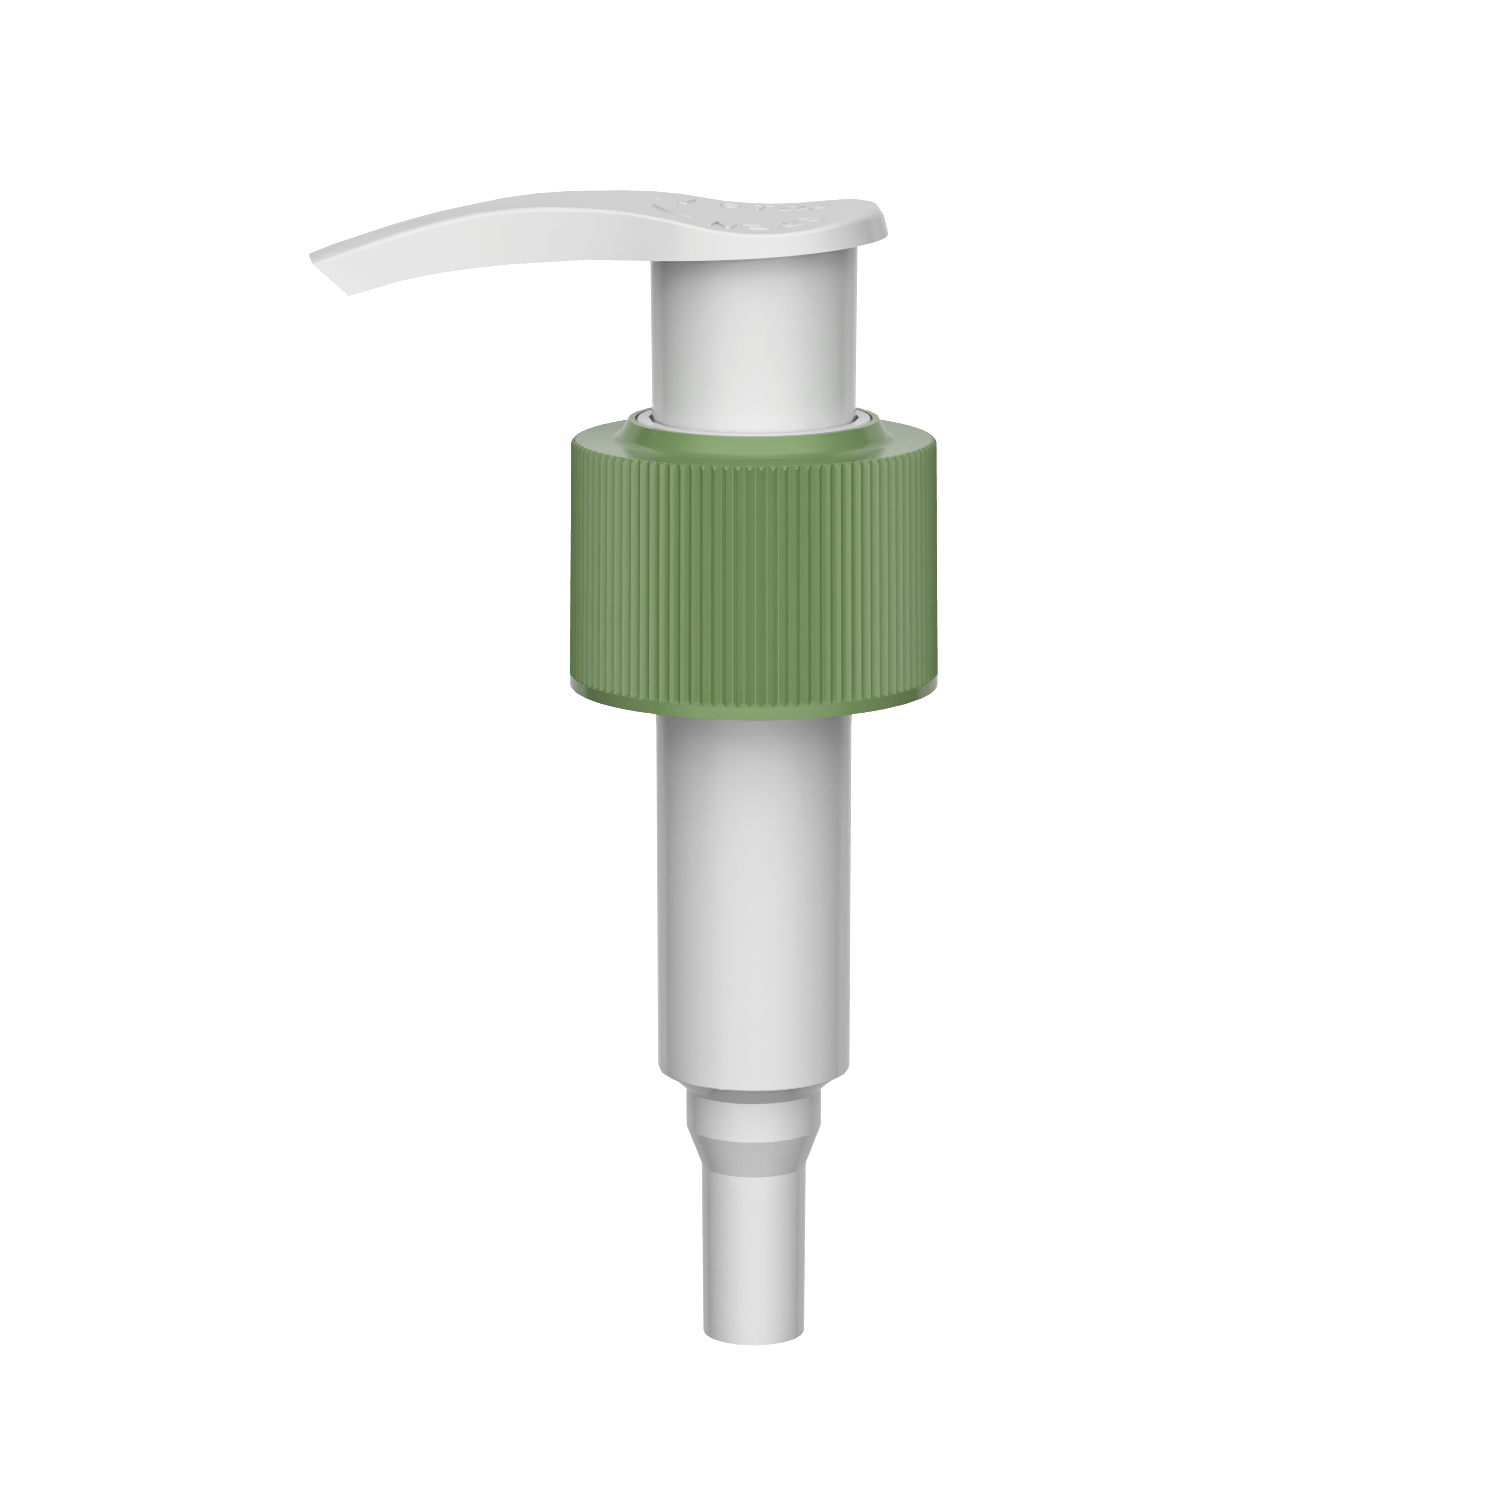 HD-607A 24/410 distributore per la pulizia dello shampoo con bloccaggio sinistro destro 1.2-1.5CC pompa per lozione